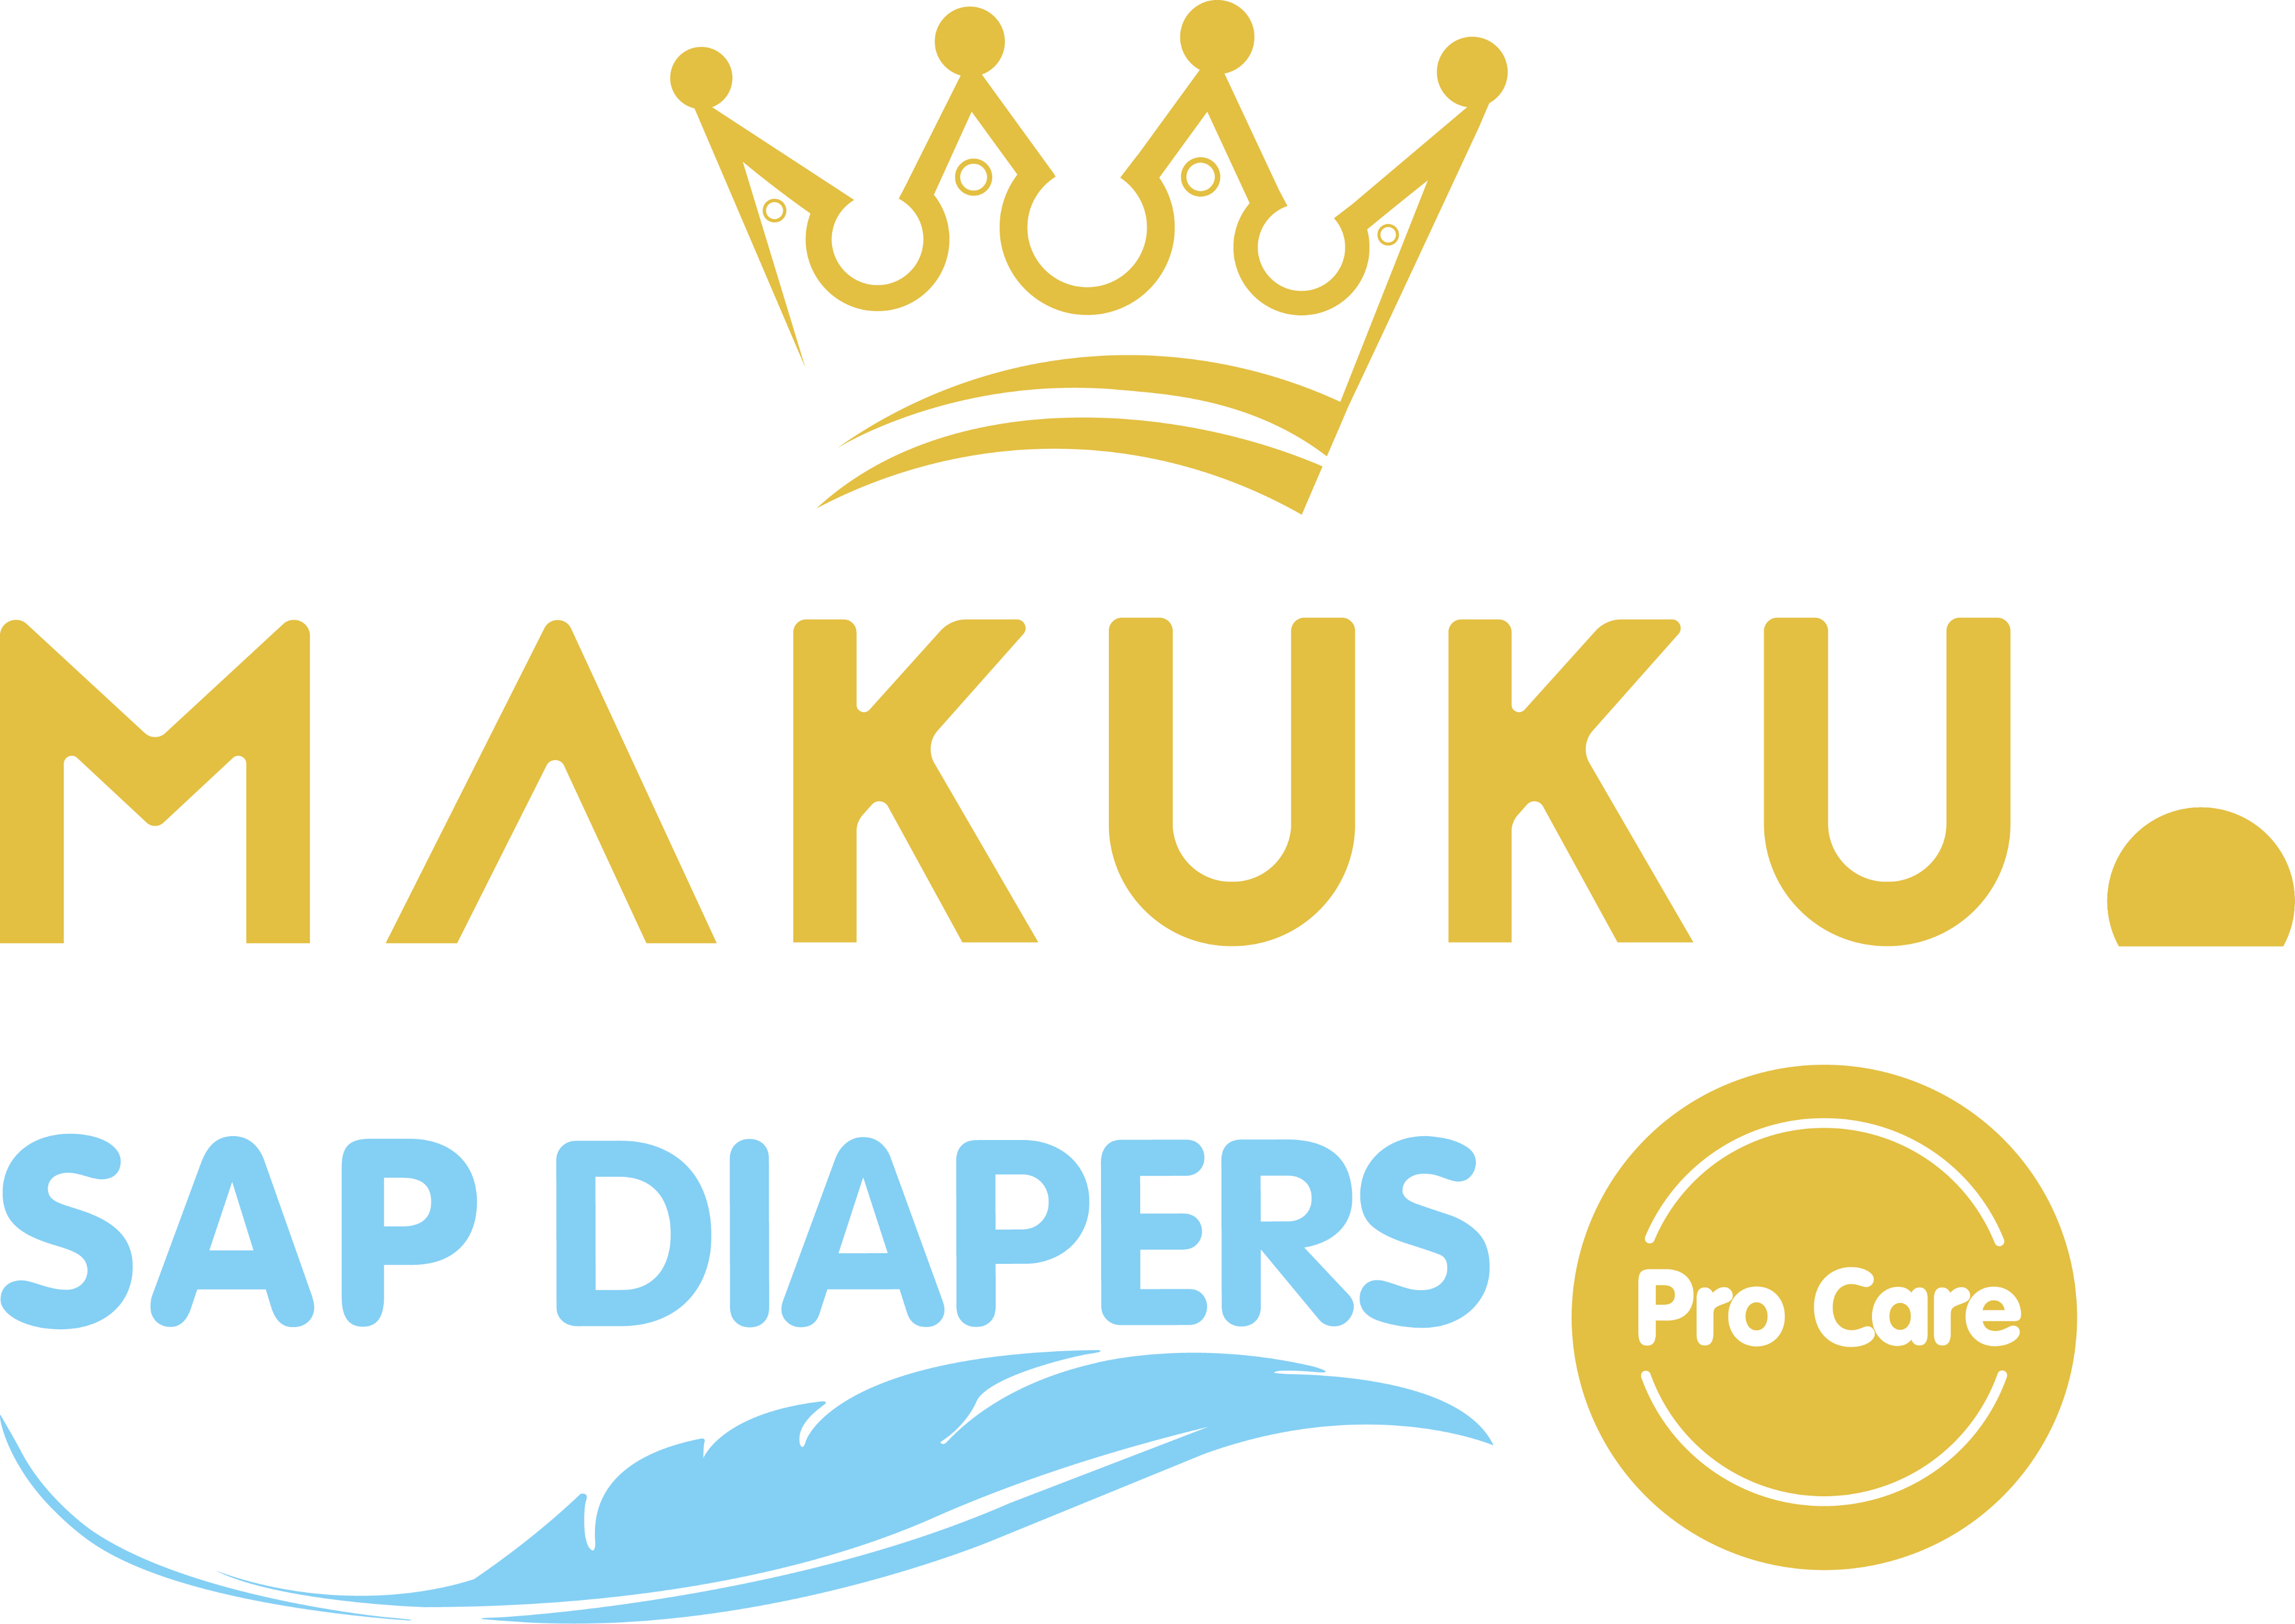 Logo Makuku Air Diapers Pro Care